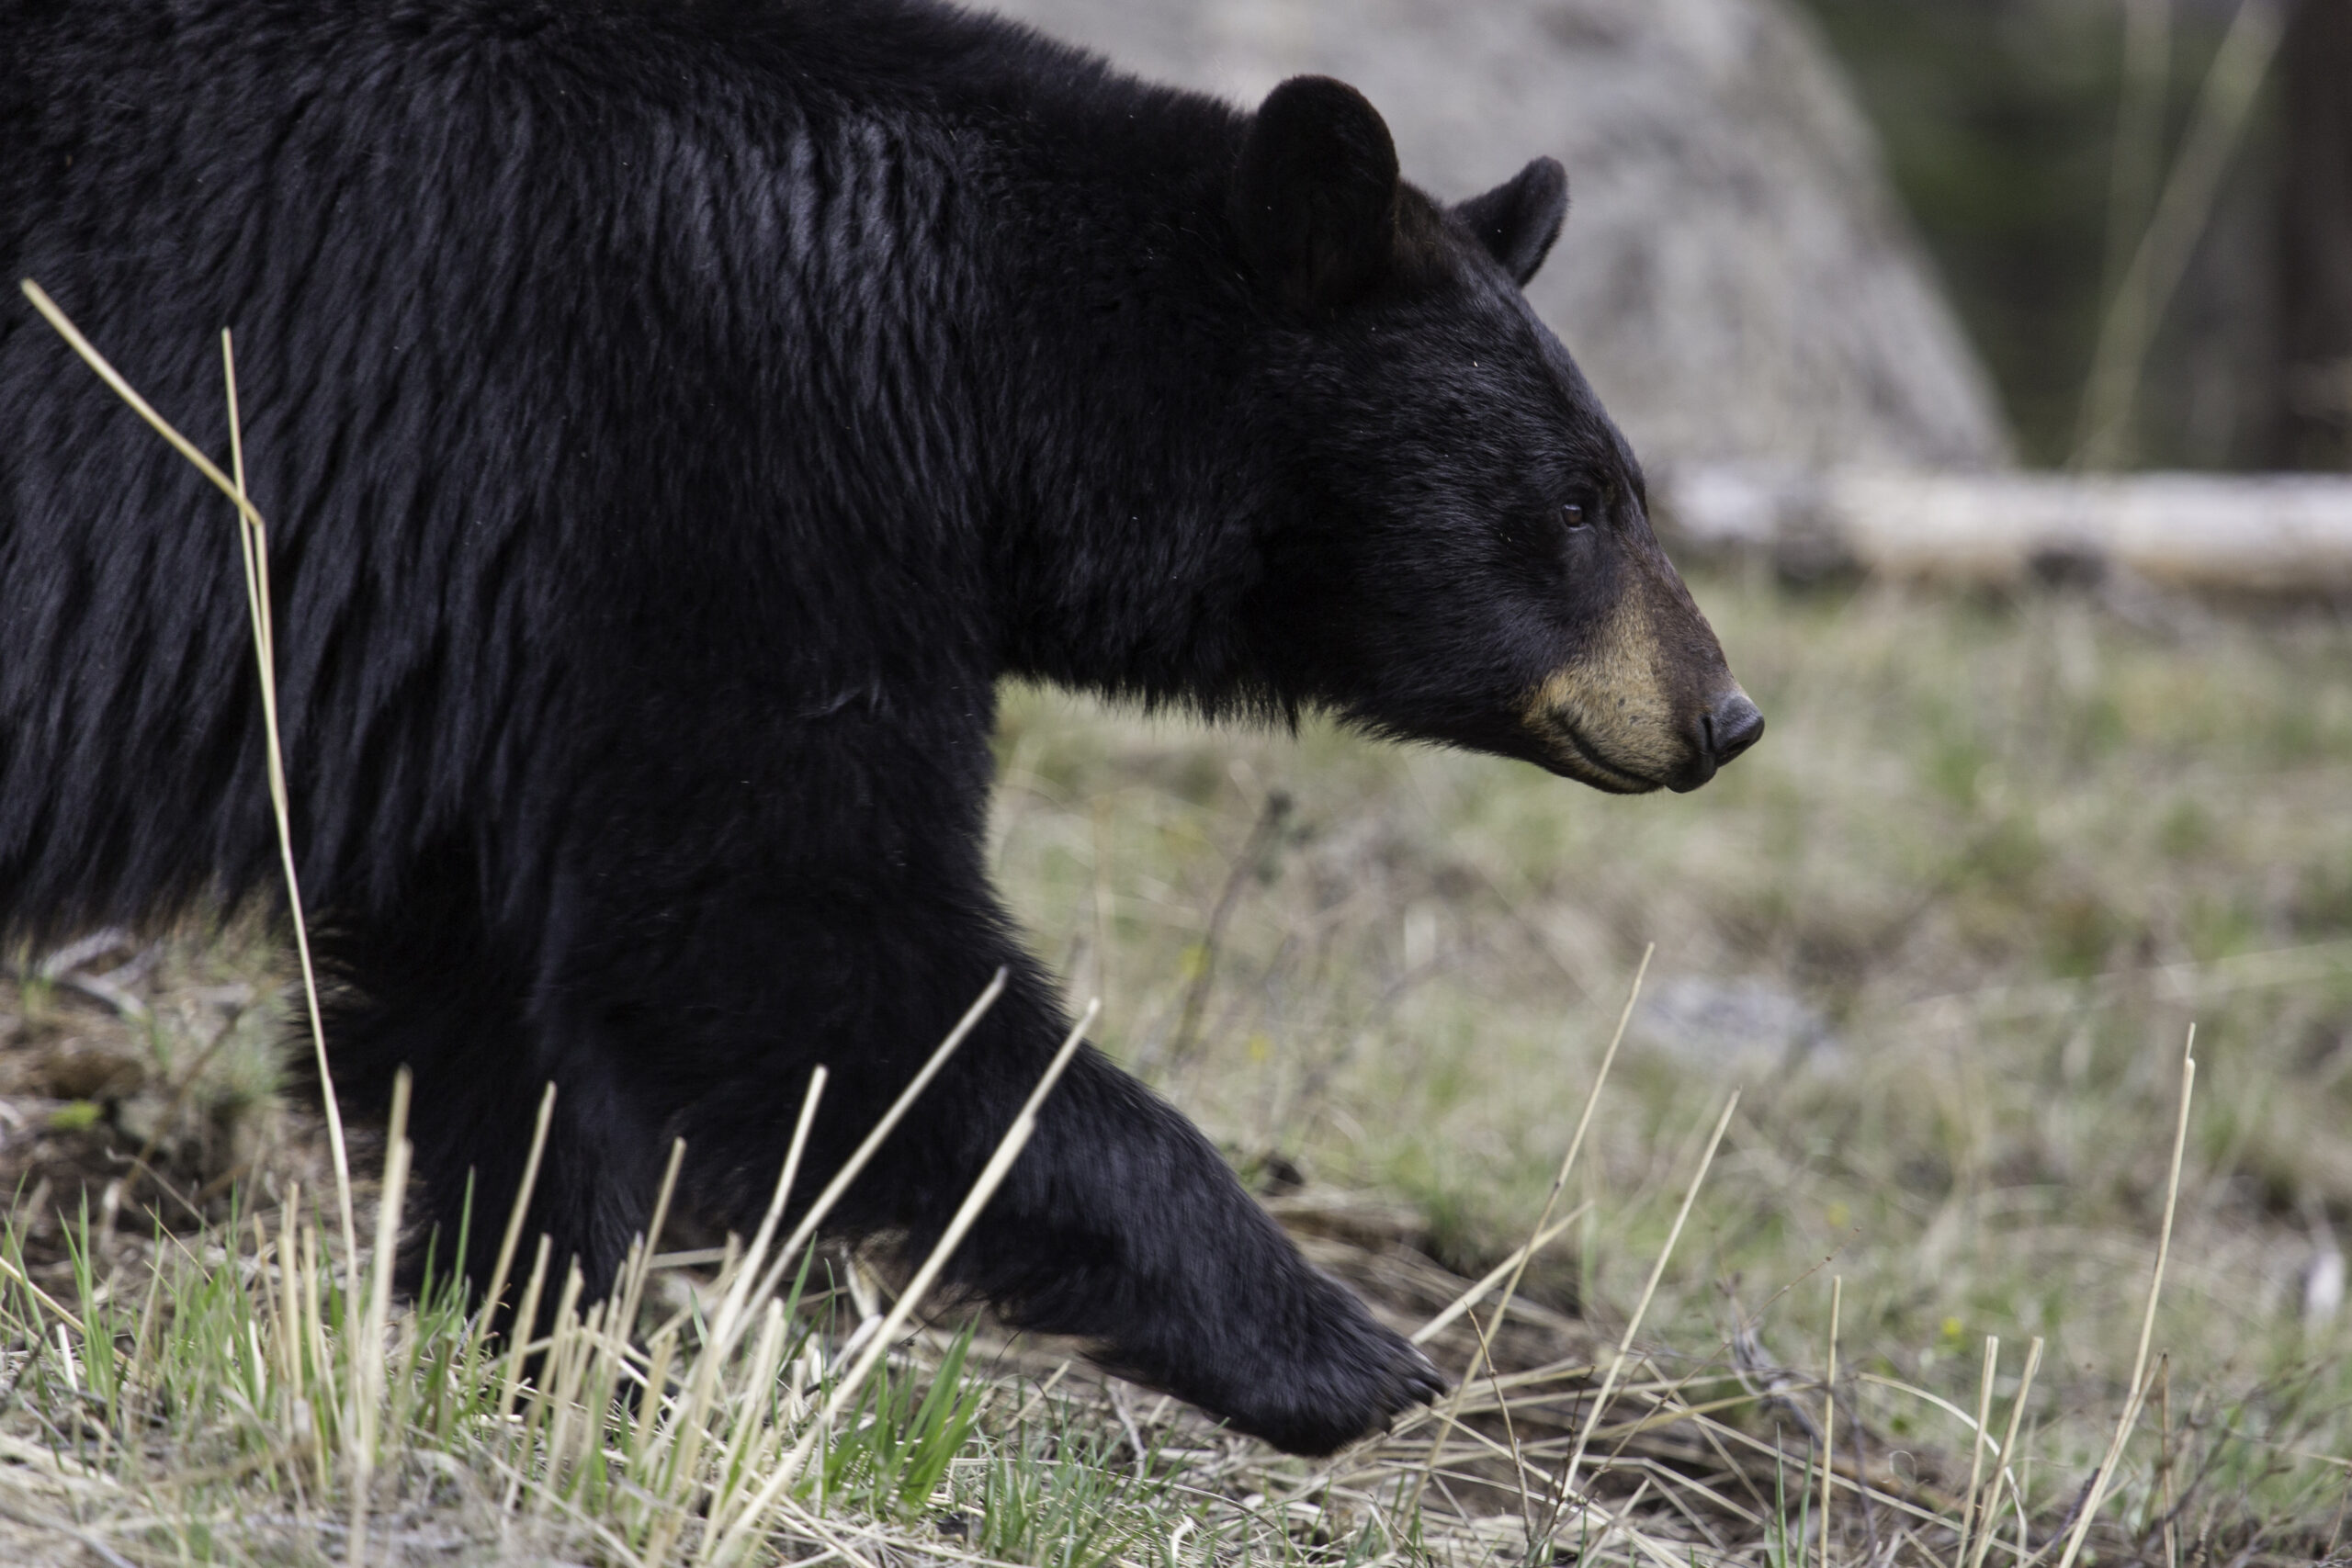 熊猎人骚扰并不罕见。